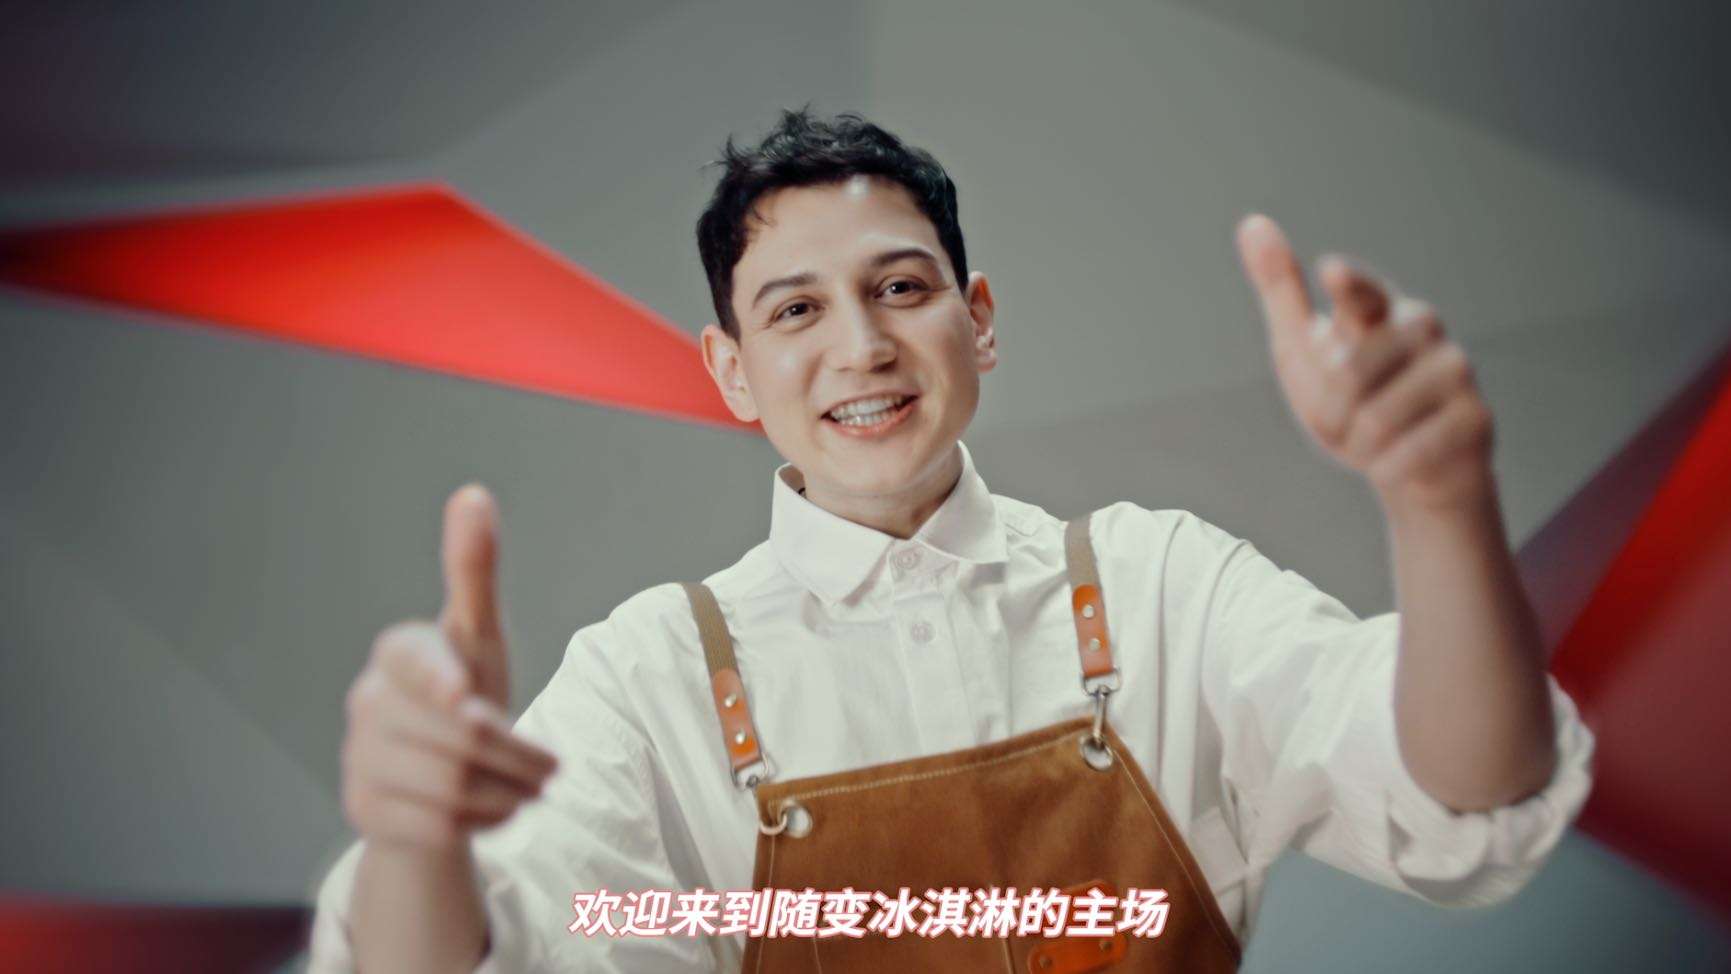 中国说唱巅峰对决X 随变冰淇淋创意中插广告 艾热篇